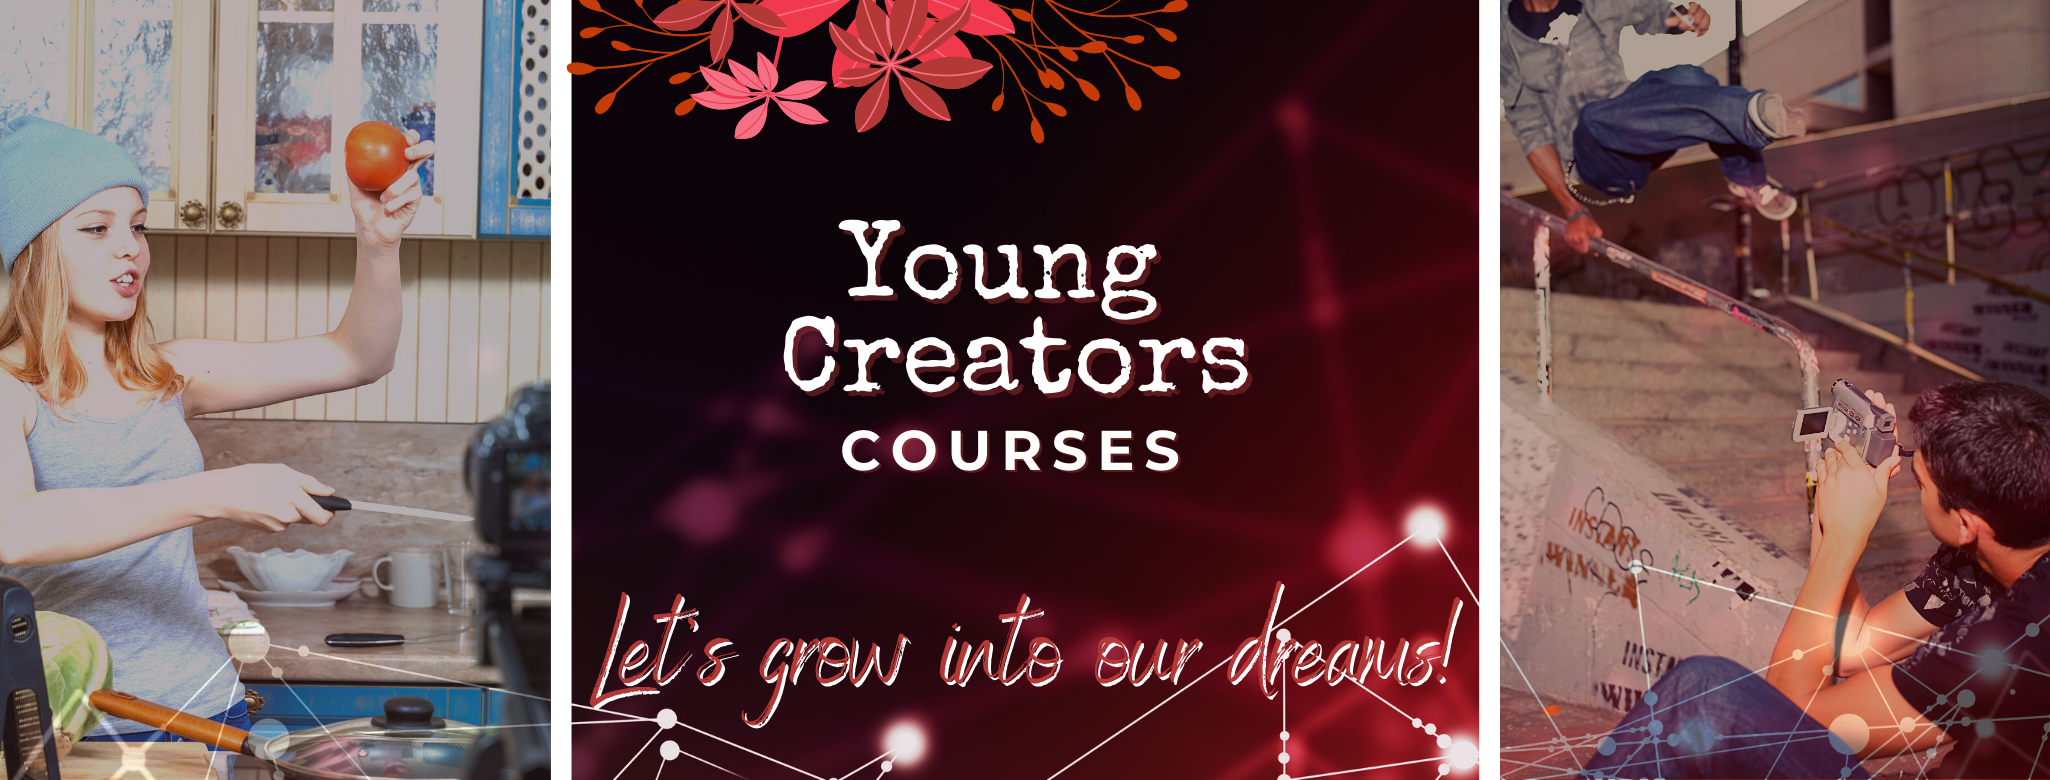 Young Creators